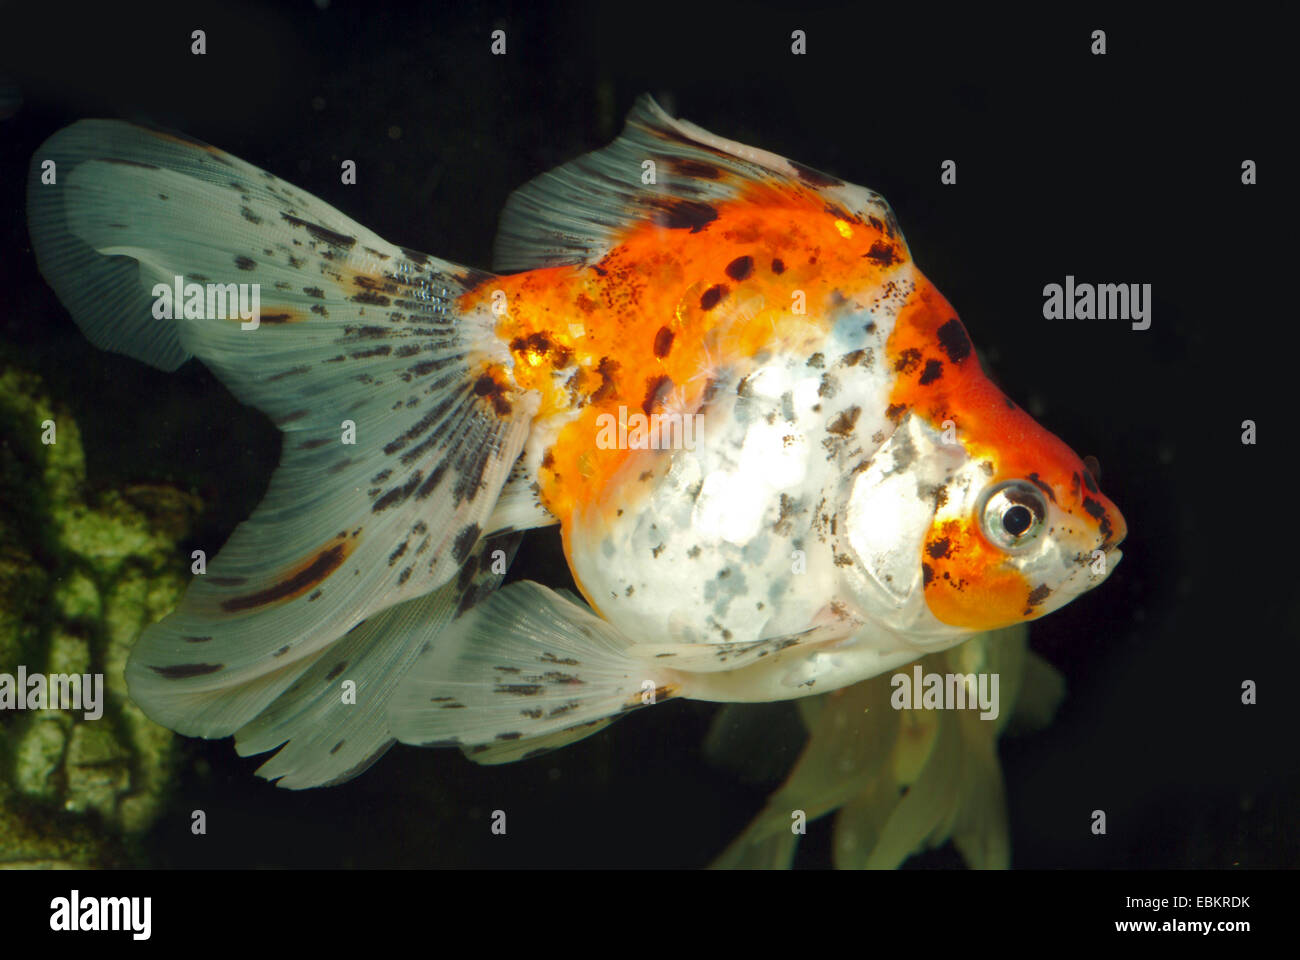 goldfish, common carp (Carassius auratus), breeding form Fringtail calico Stock Photo